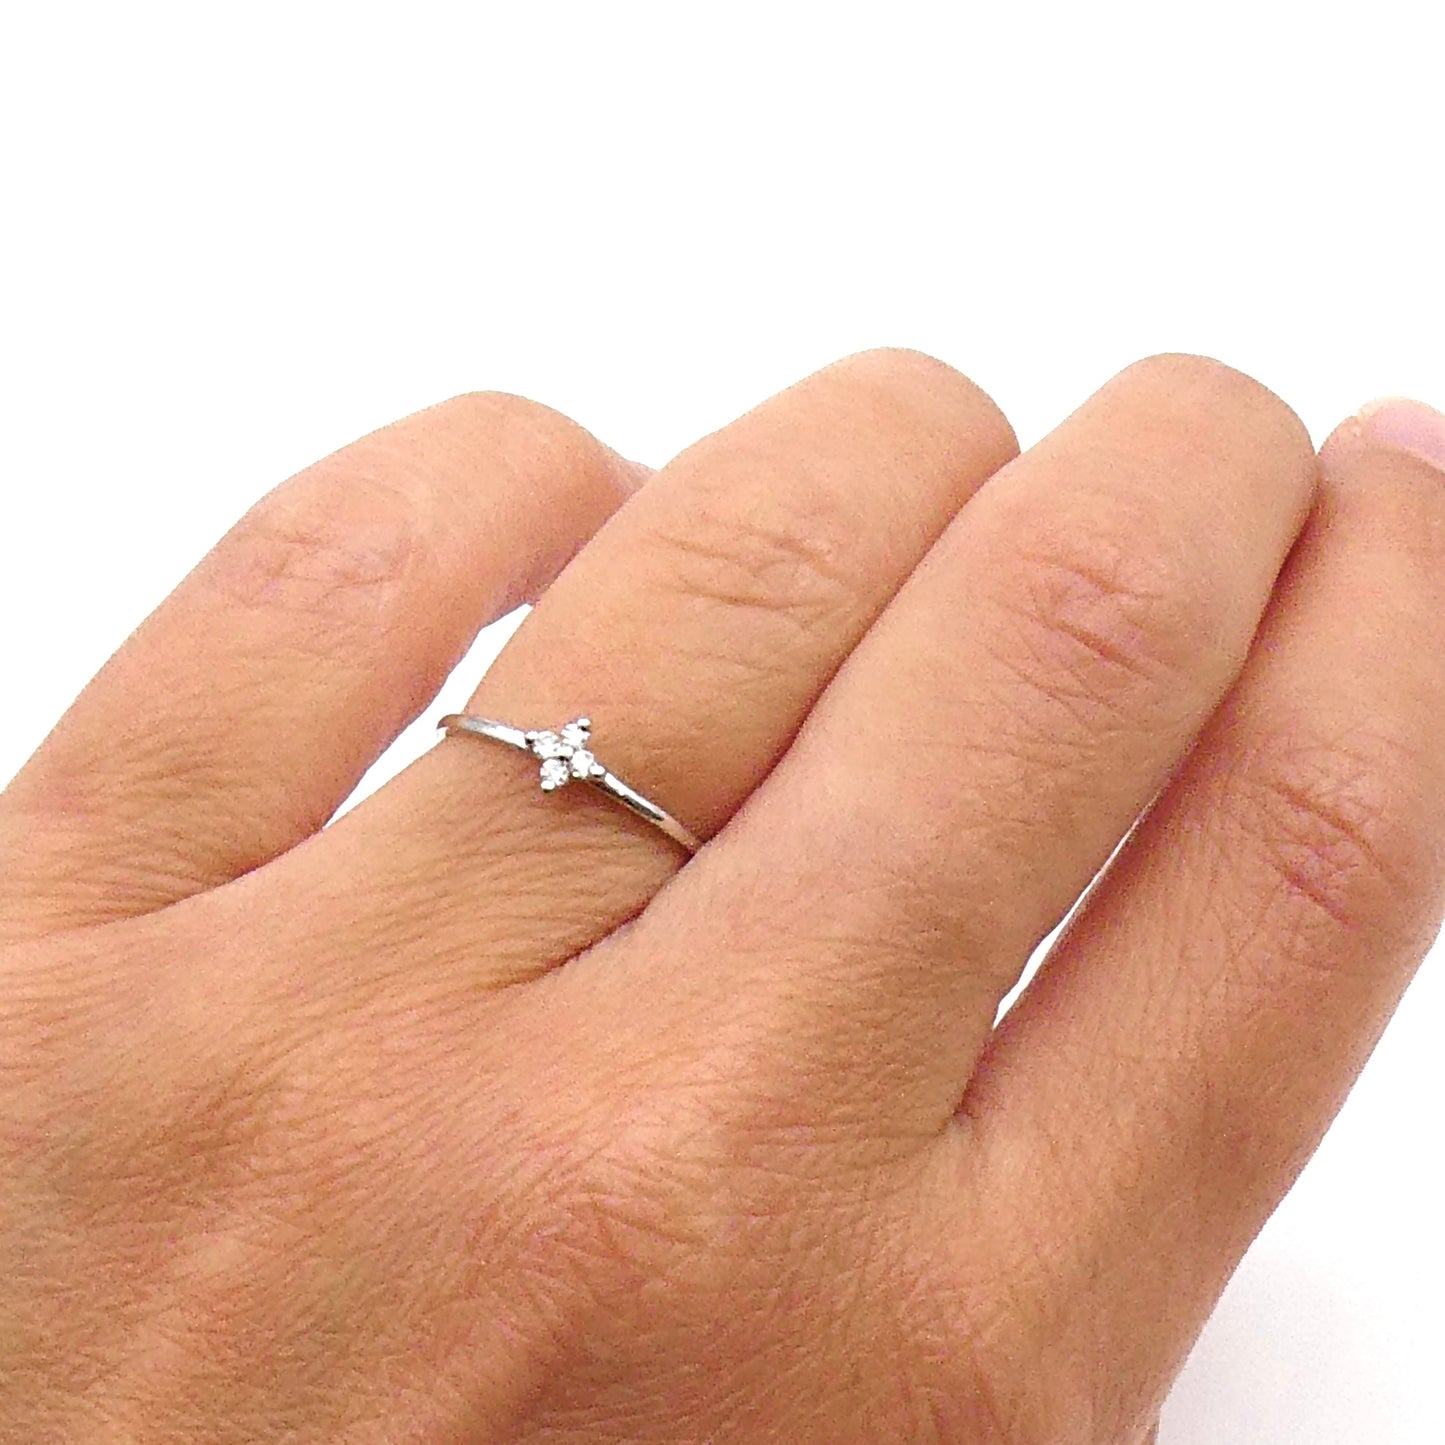 A diamond flower ring in 18kt white gold.